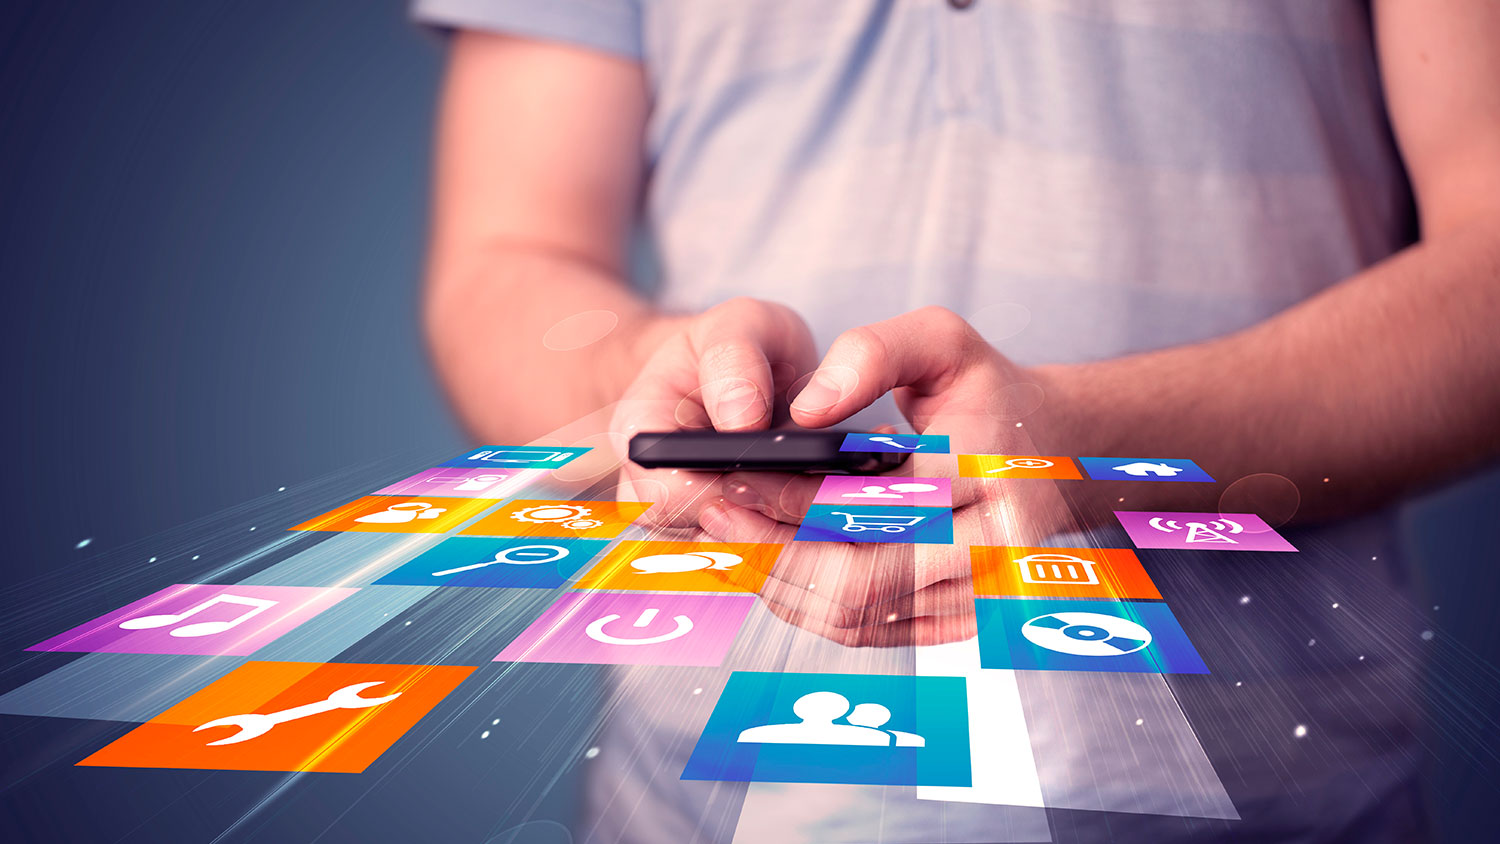 Cuáles son las nuevas tendencias en aplicaciones móviles? | Conexión ESAN